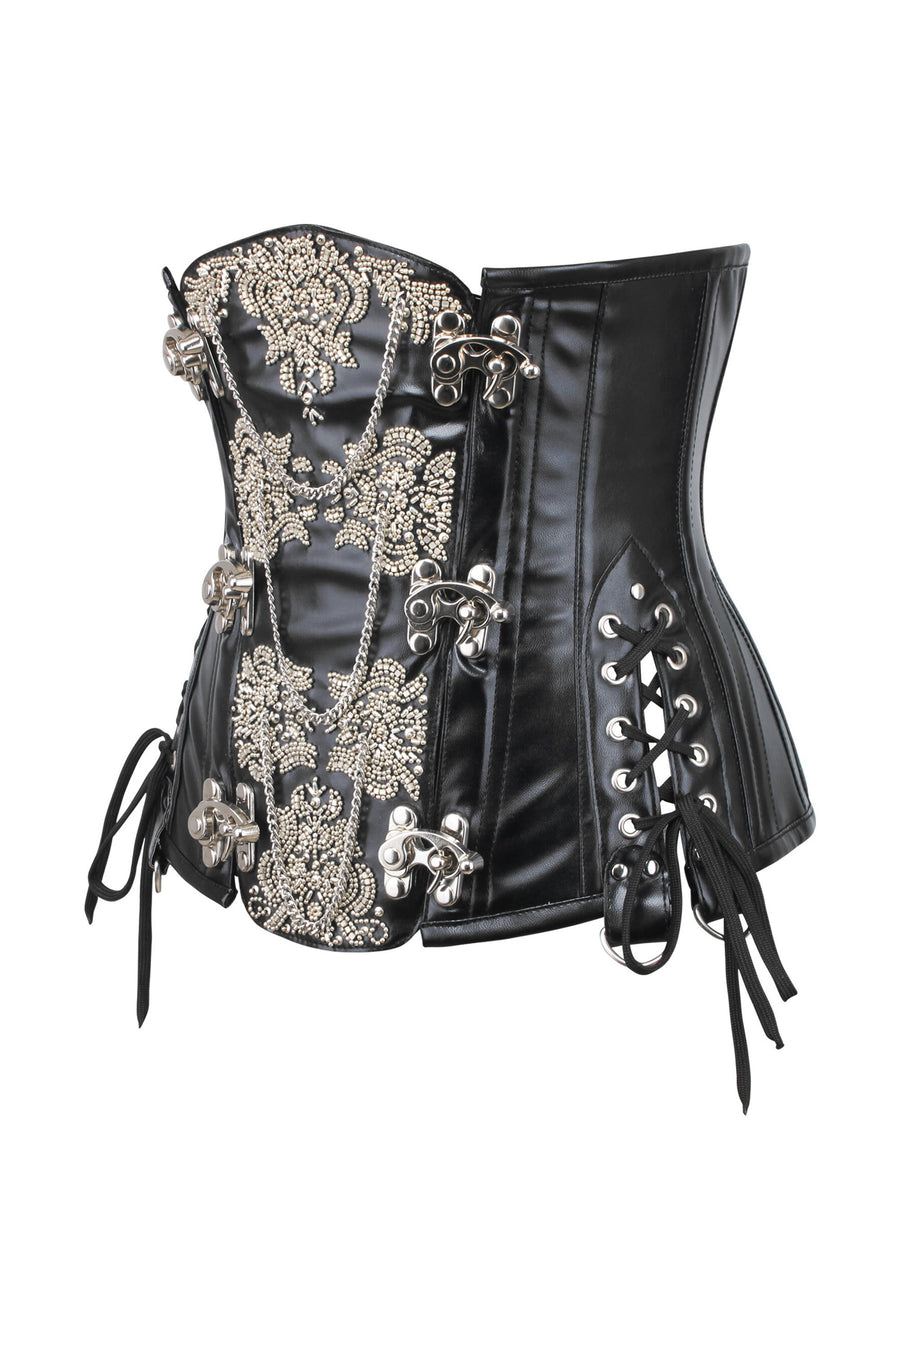 https://corset-story-ca.com/cdn/shop/products/WTS2233_900x.jpg?v=1668108231